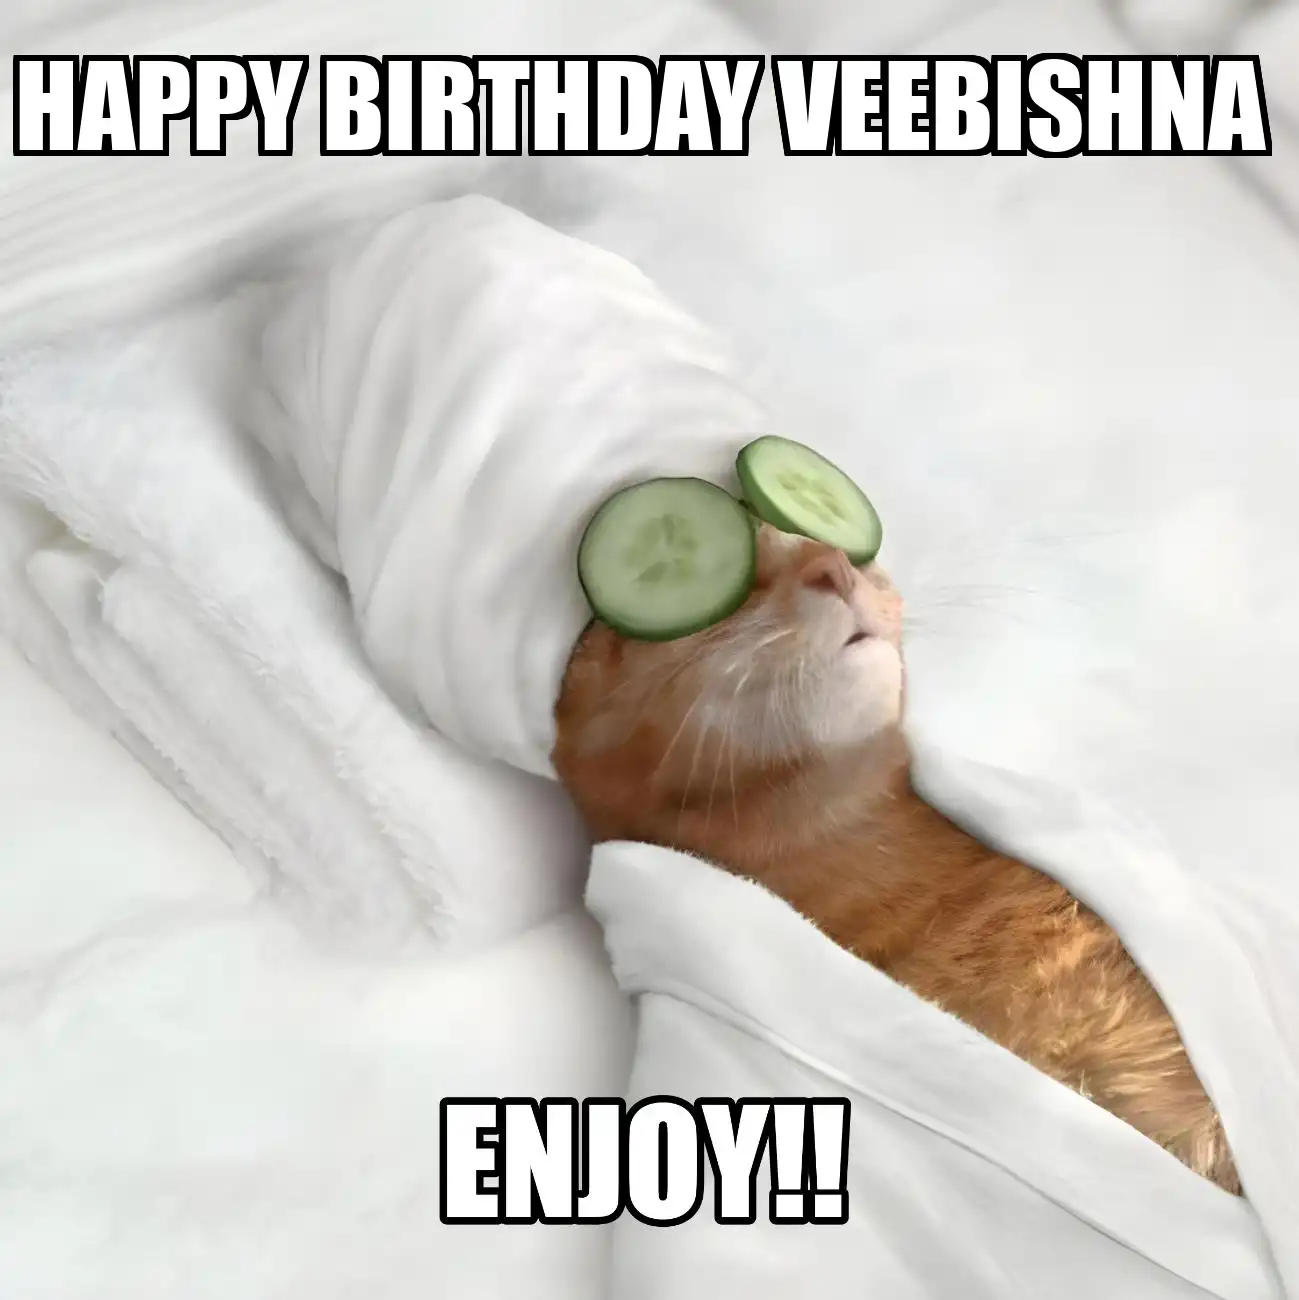 Happy Birthday Veebishna Enjoy Cat Meme